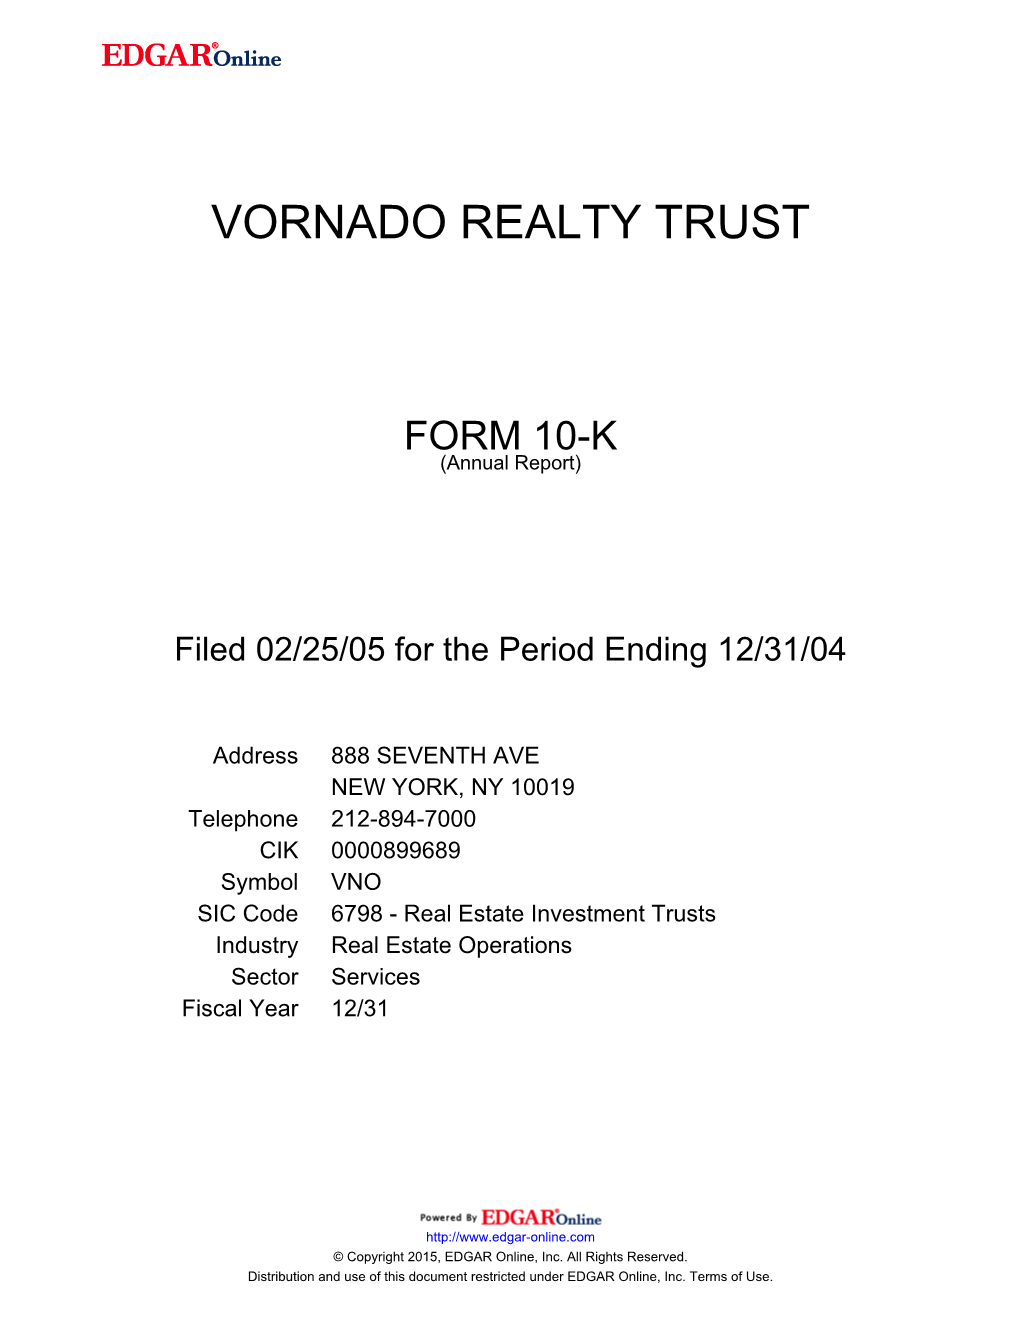 Vornado Realty Trust Form 10-K